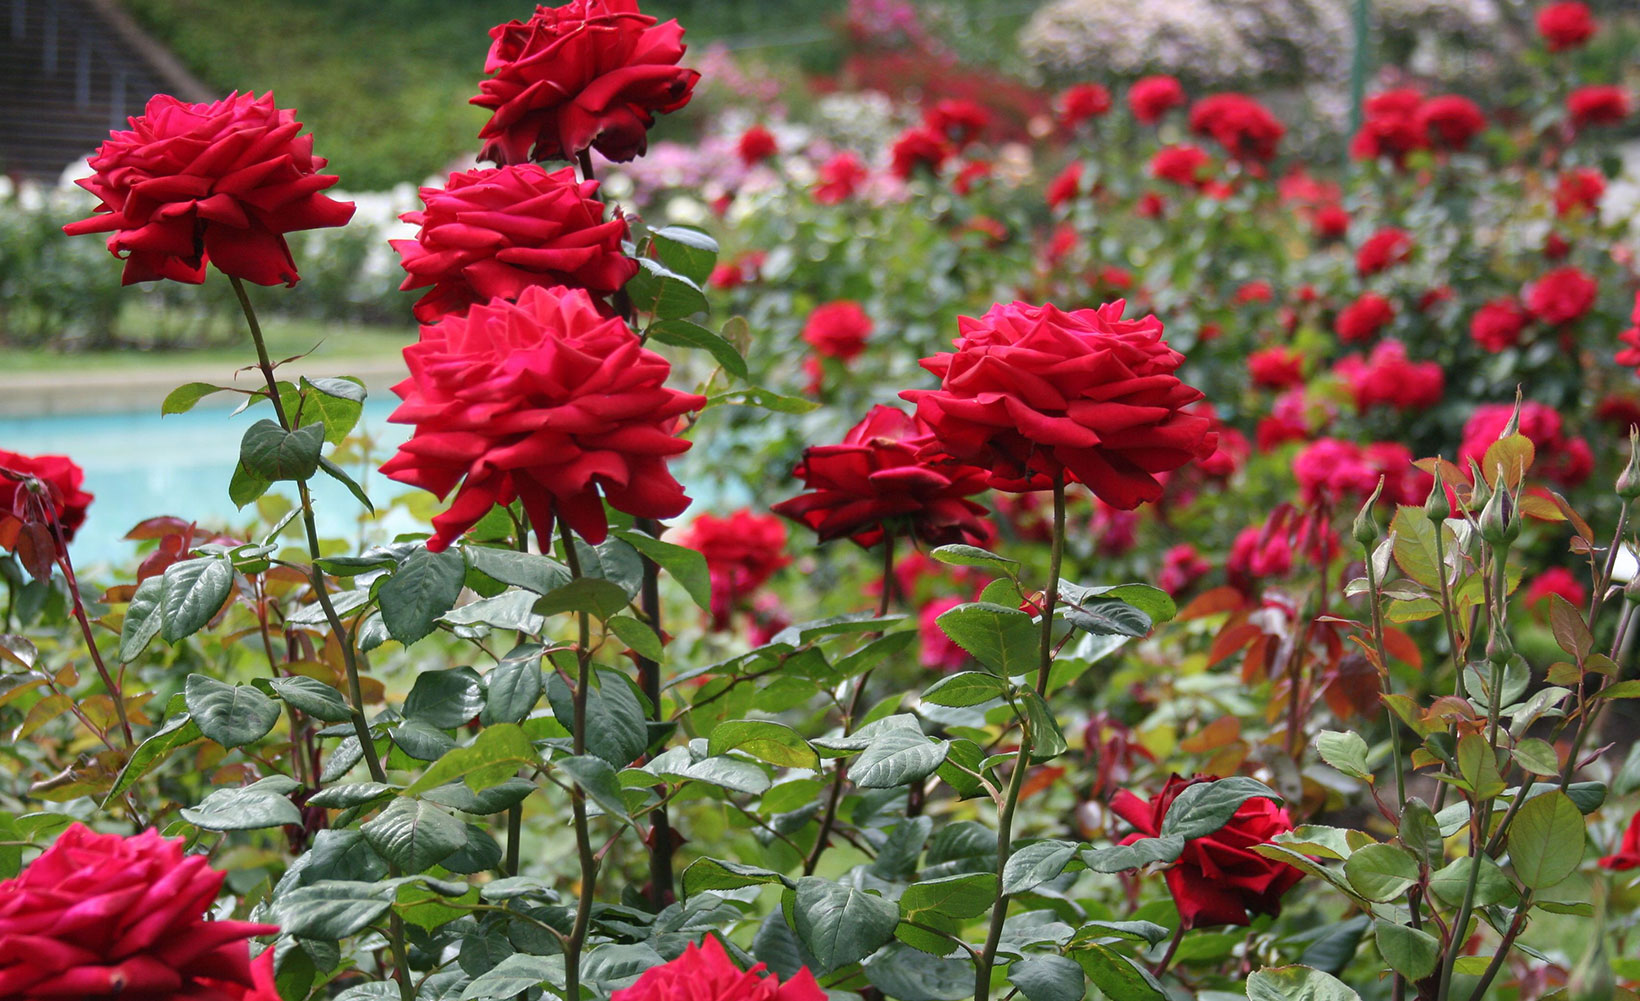 Chandigarh acolherá o Festival das Rosas a partir de 28 de Fevereiro